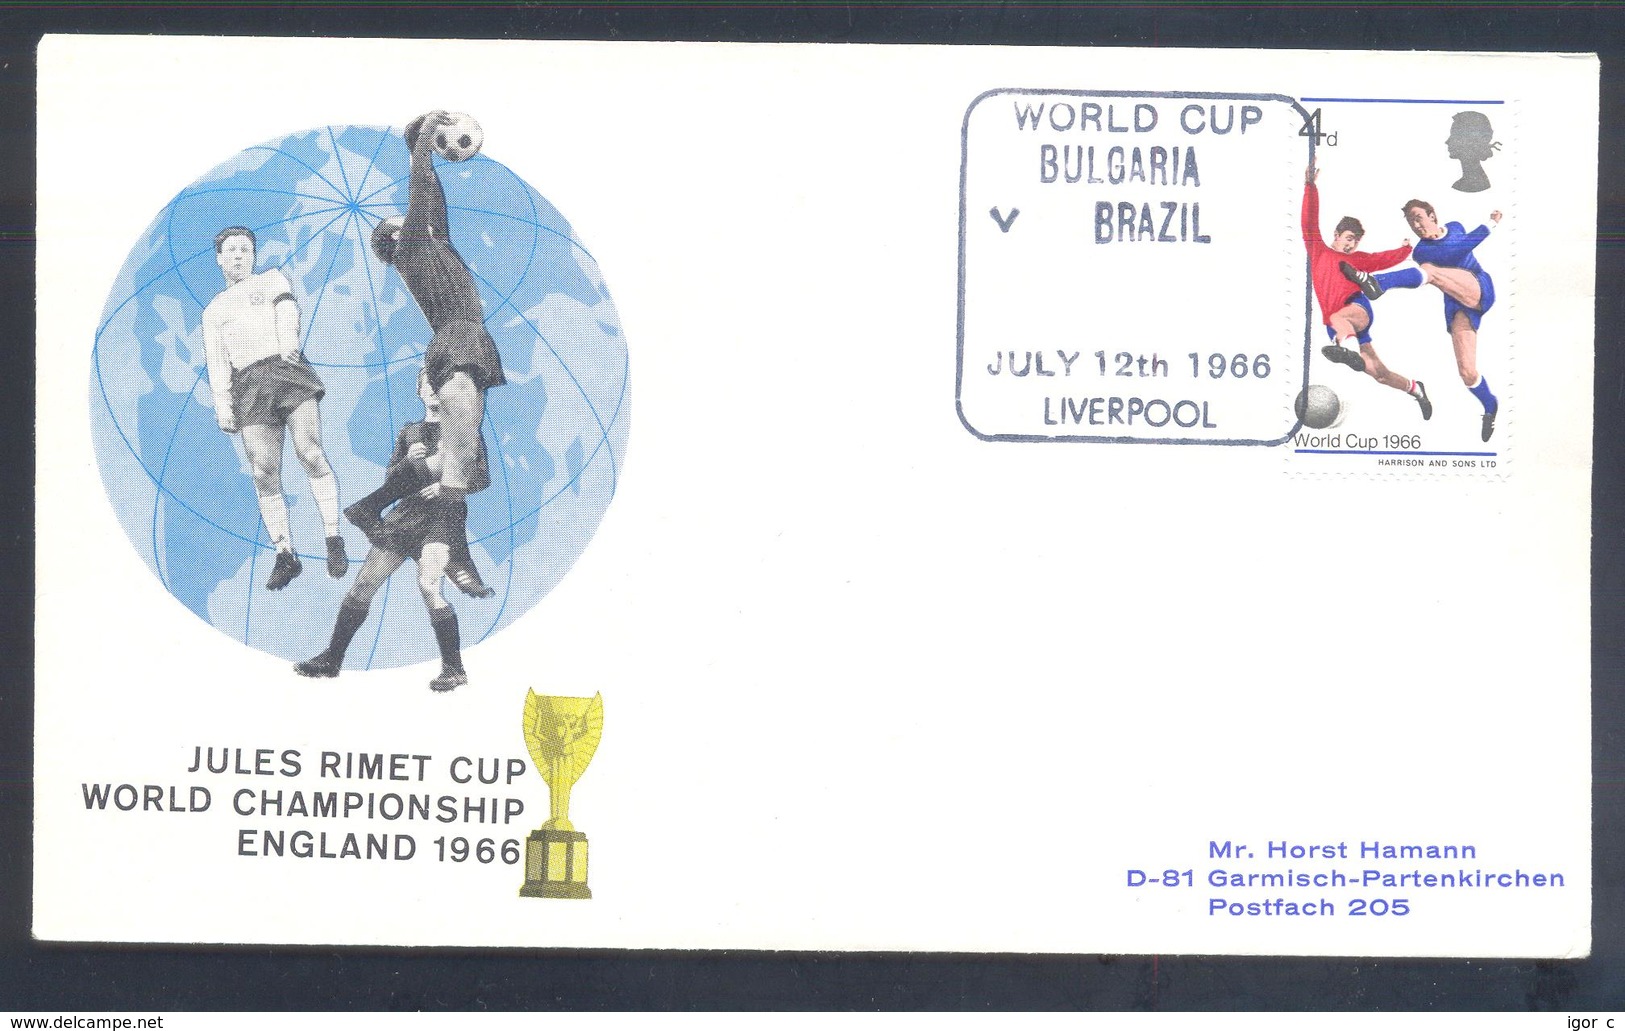 England UK 1966 Cover: Football Fussball Soccer Calcio; FIFA World Cup 1966 England; Jules Rimet Cup; Bulgaria - Brazil - 1966 – England